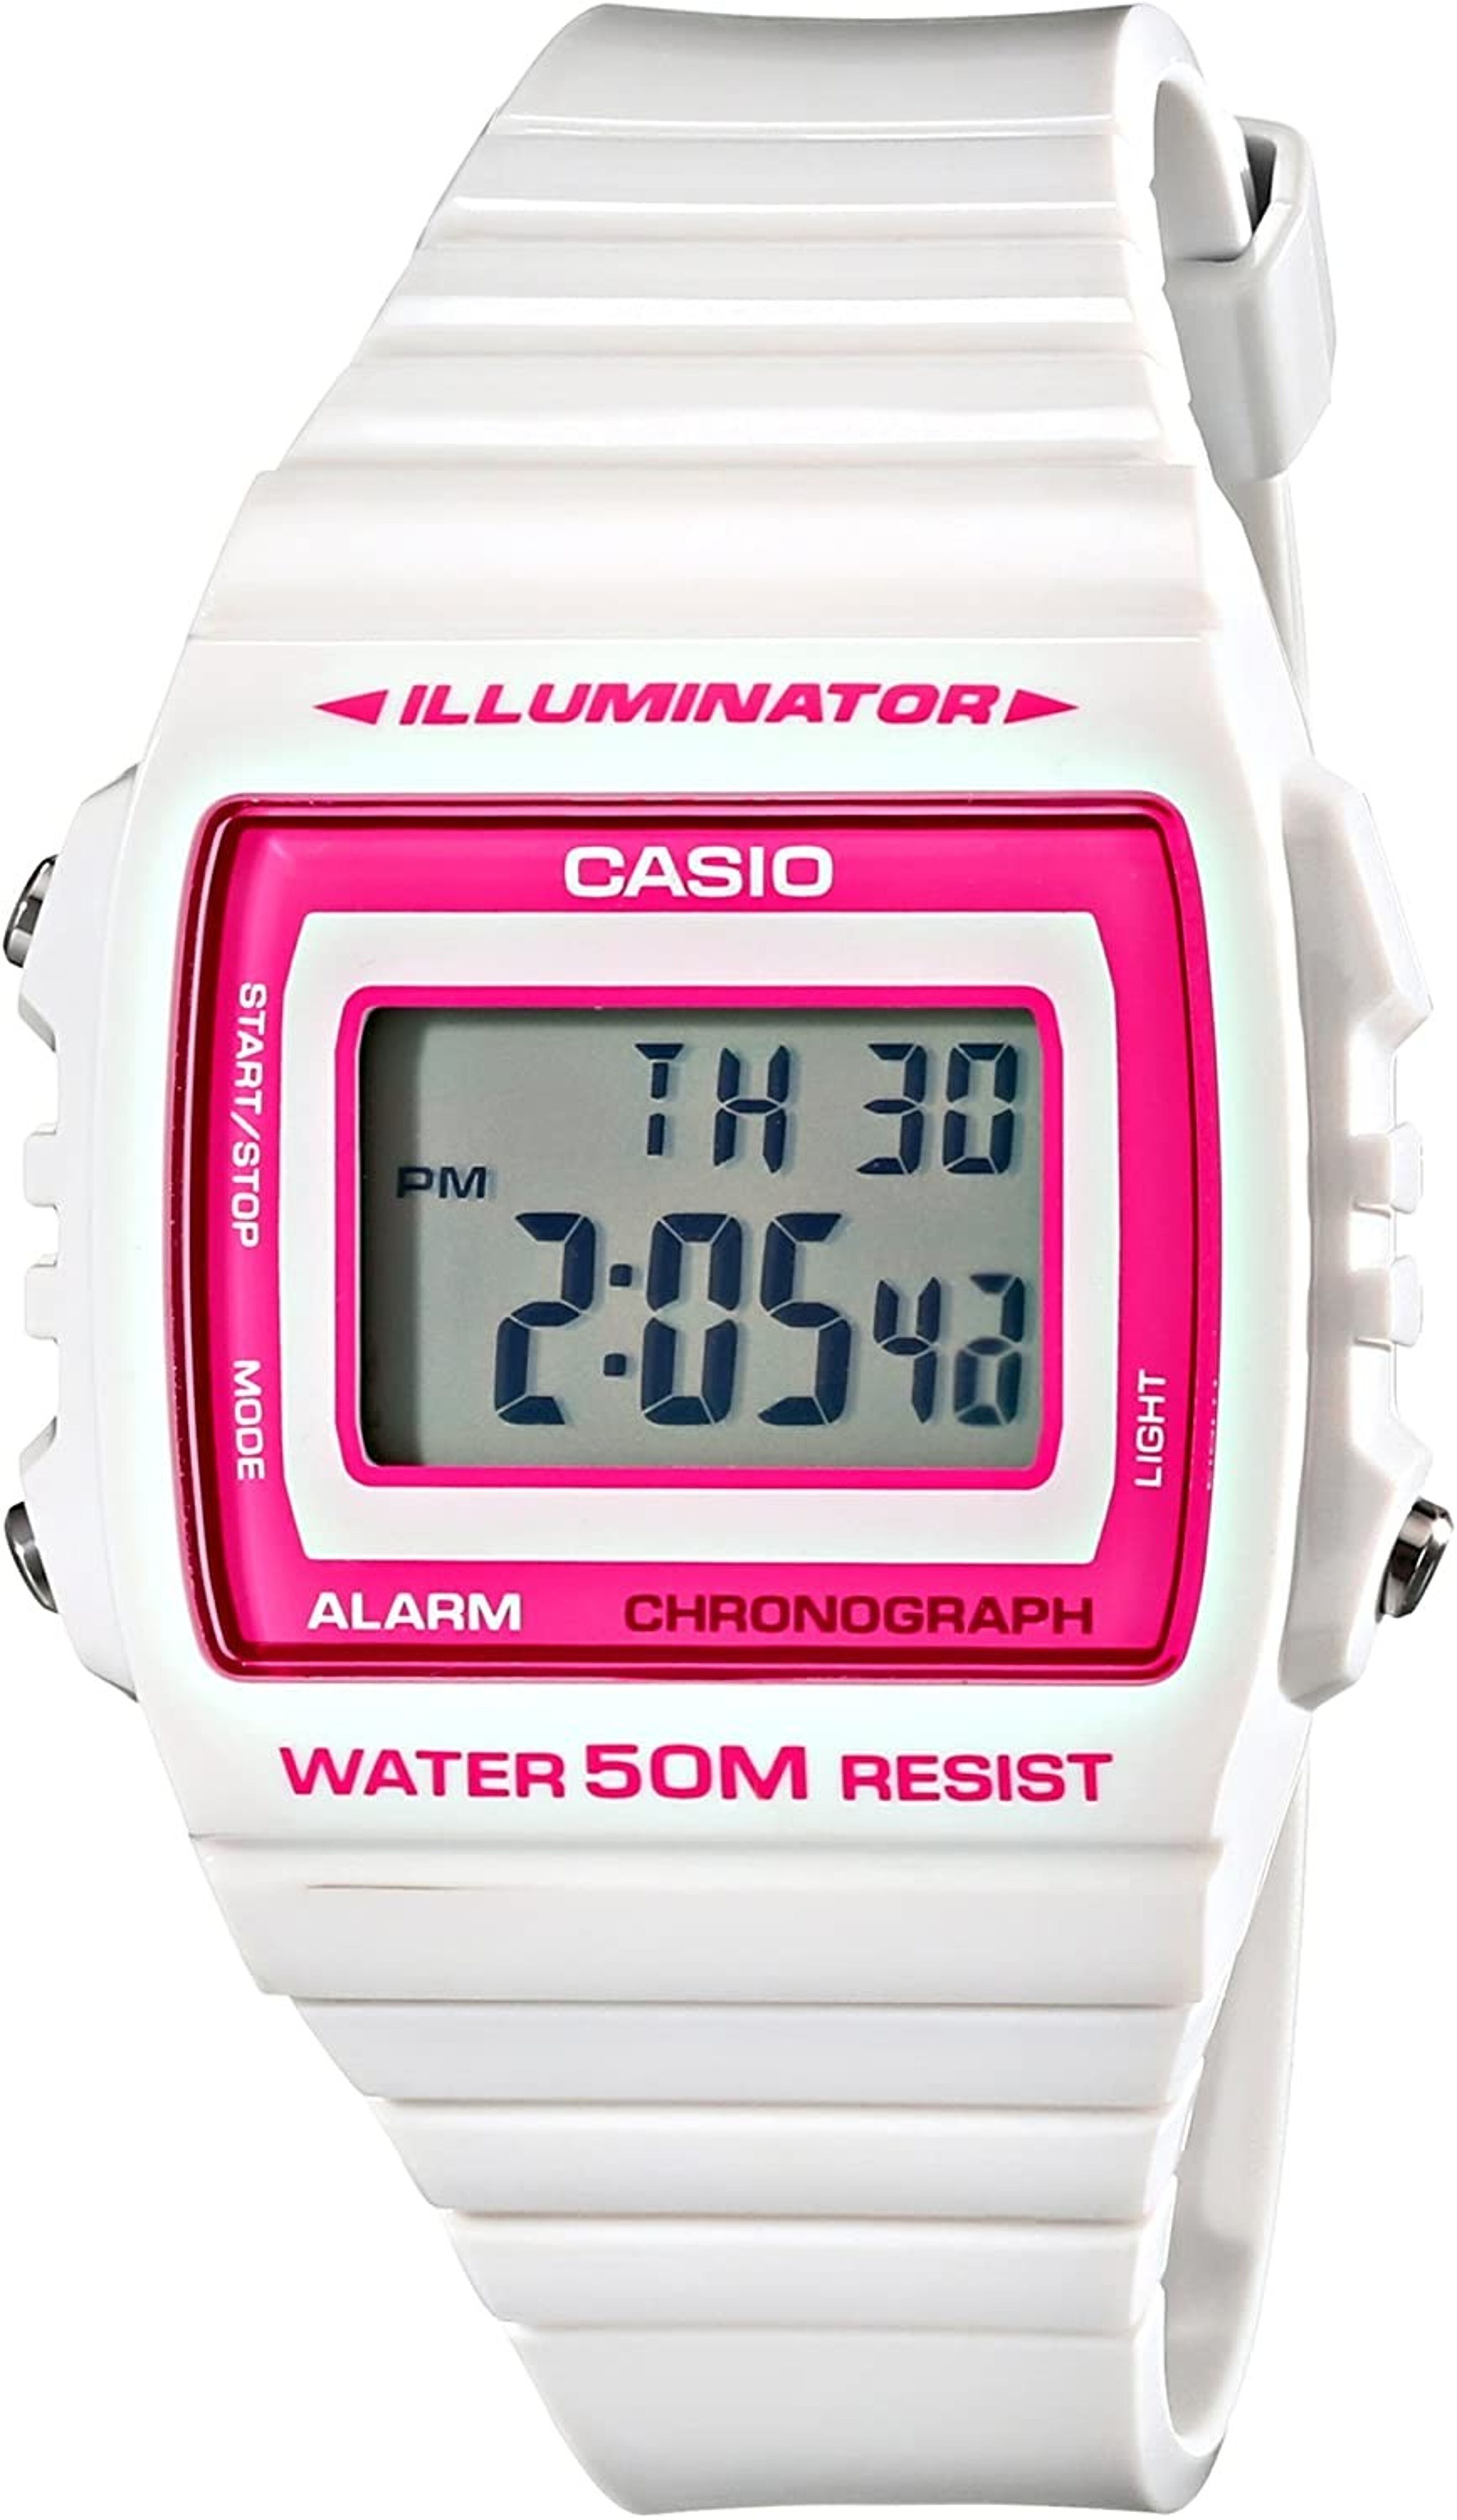 Reloj Hombre Casio W-215h-2av Azul Digital - LhuaStore – Lhua Store